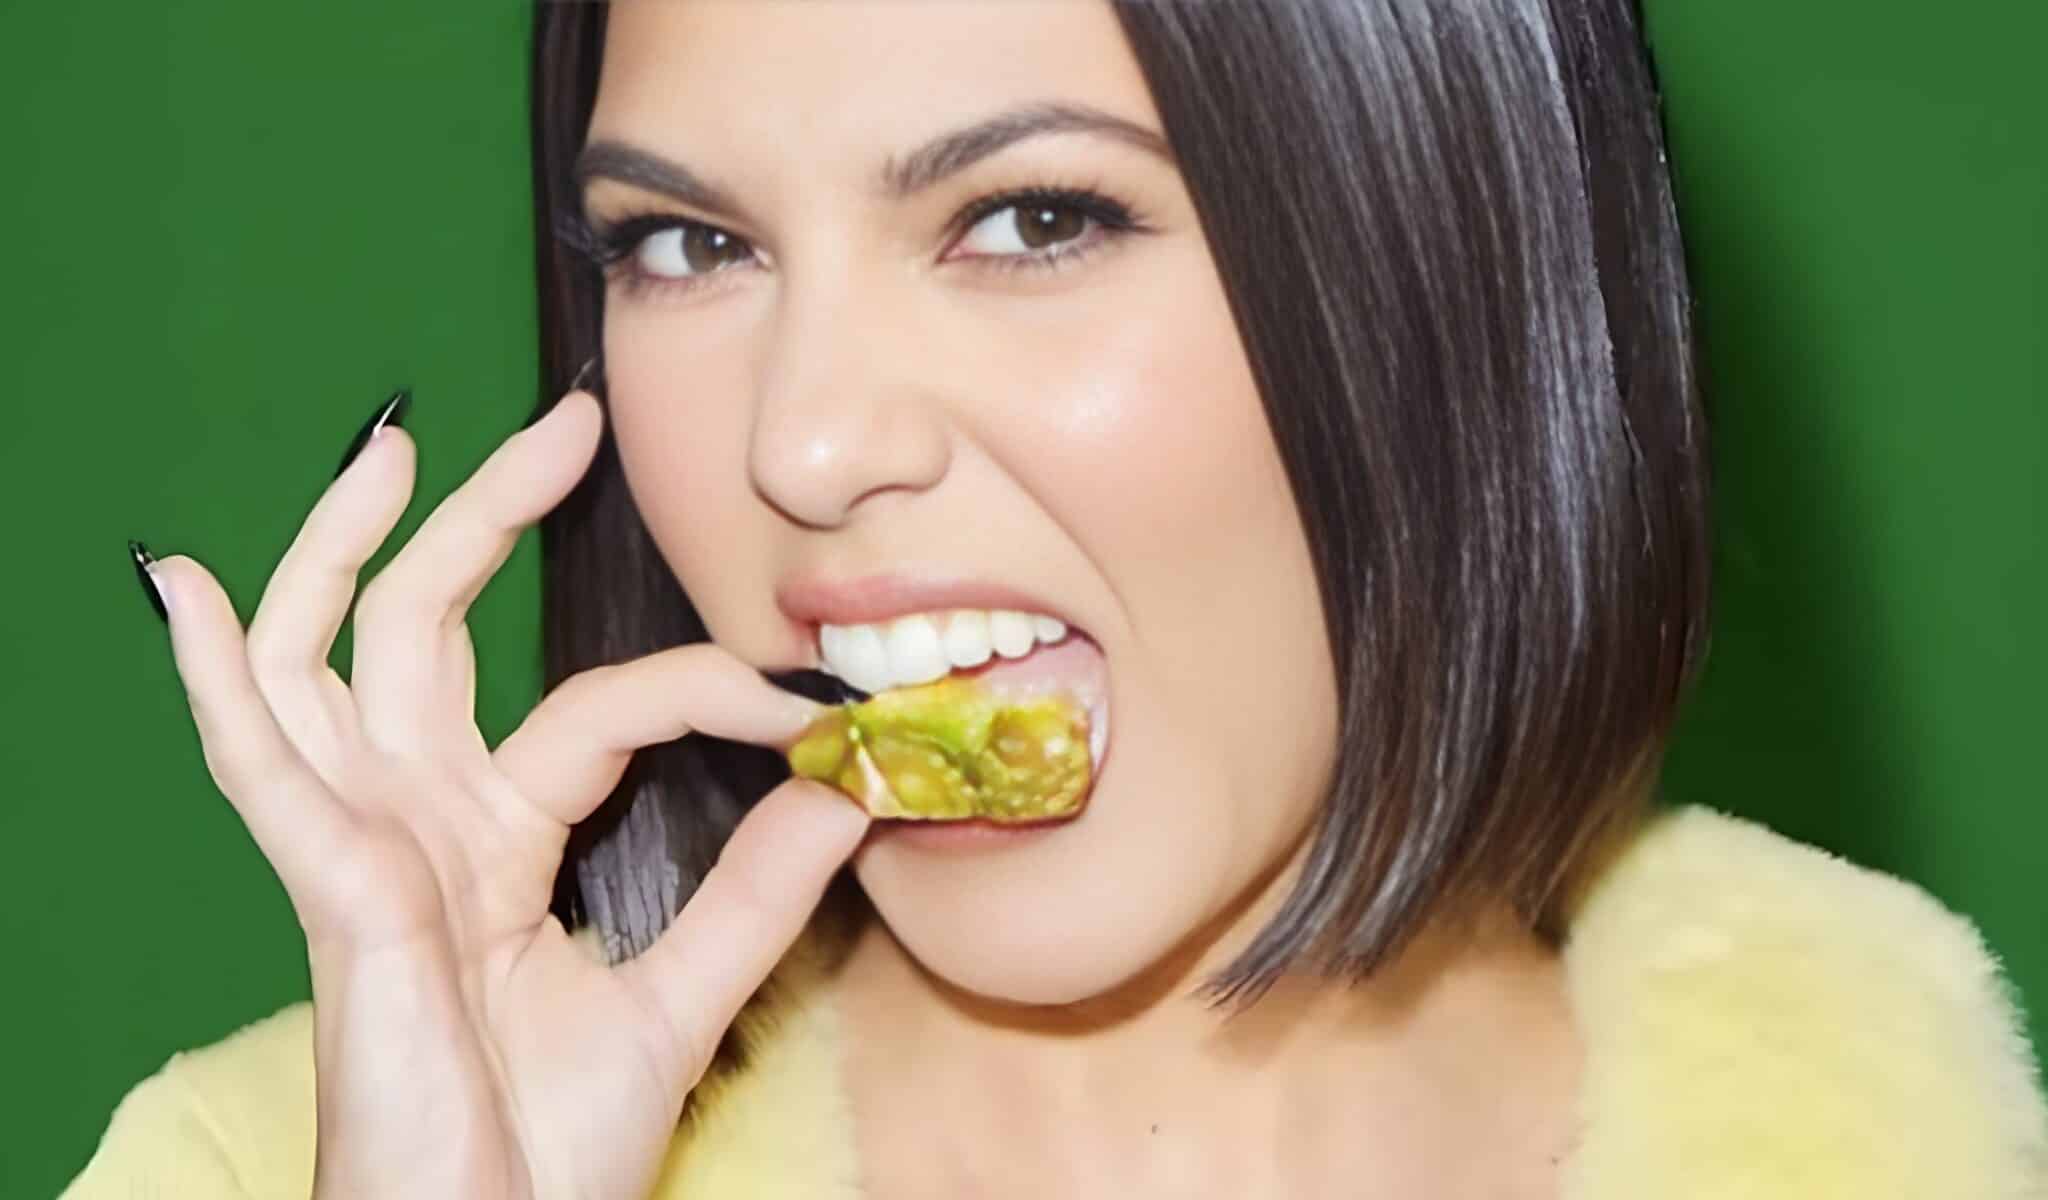 Le chewing-gum spécial pour vagin de Kourtney Kardashian